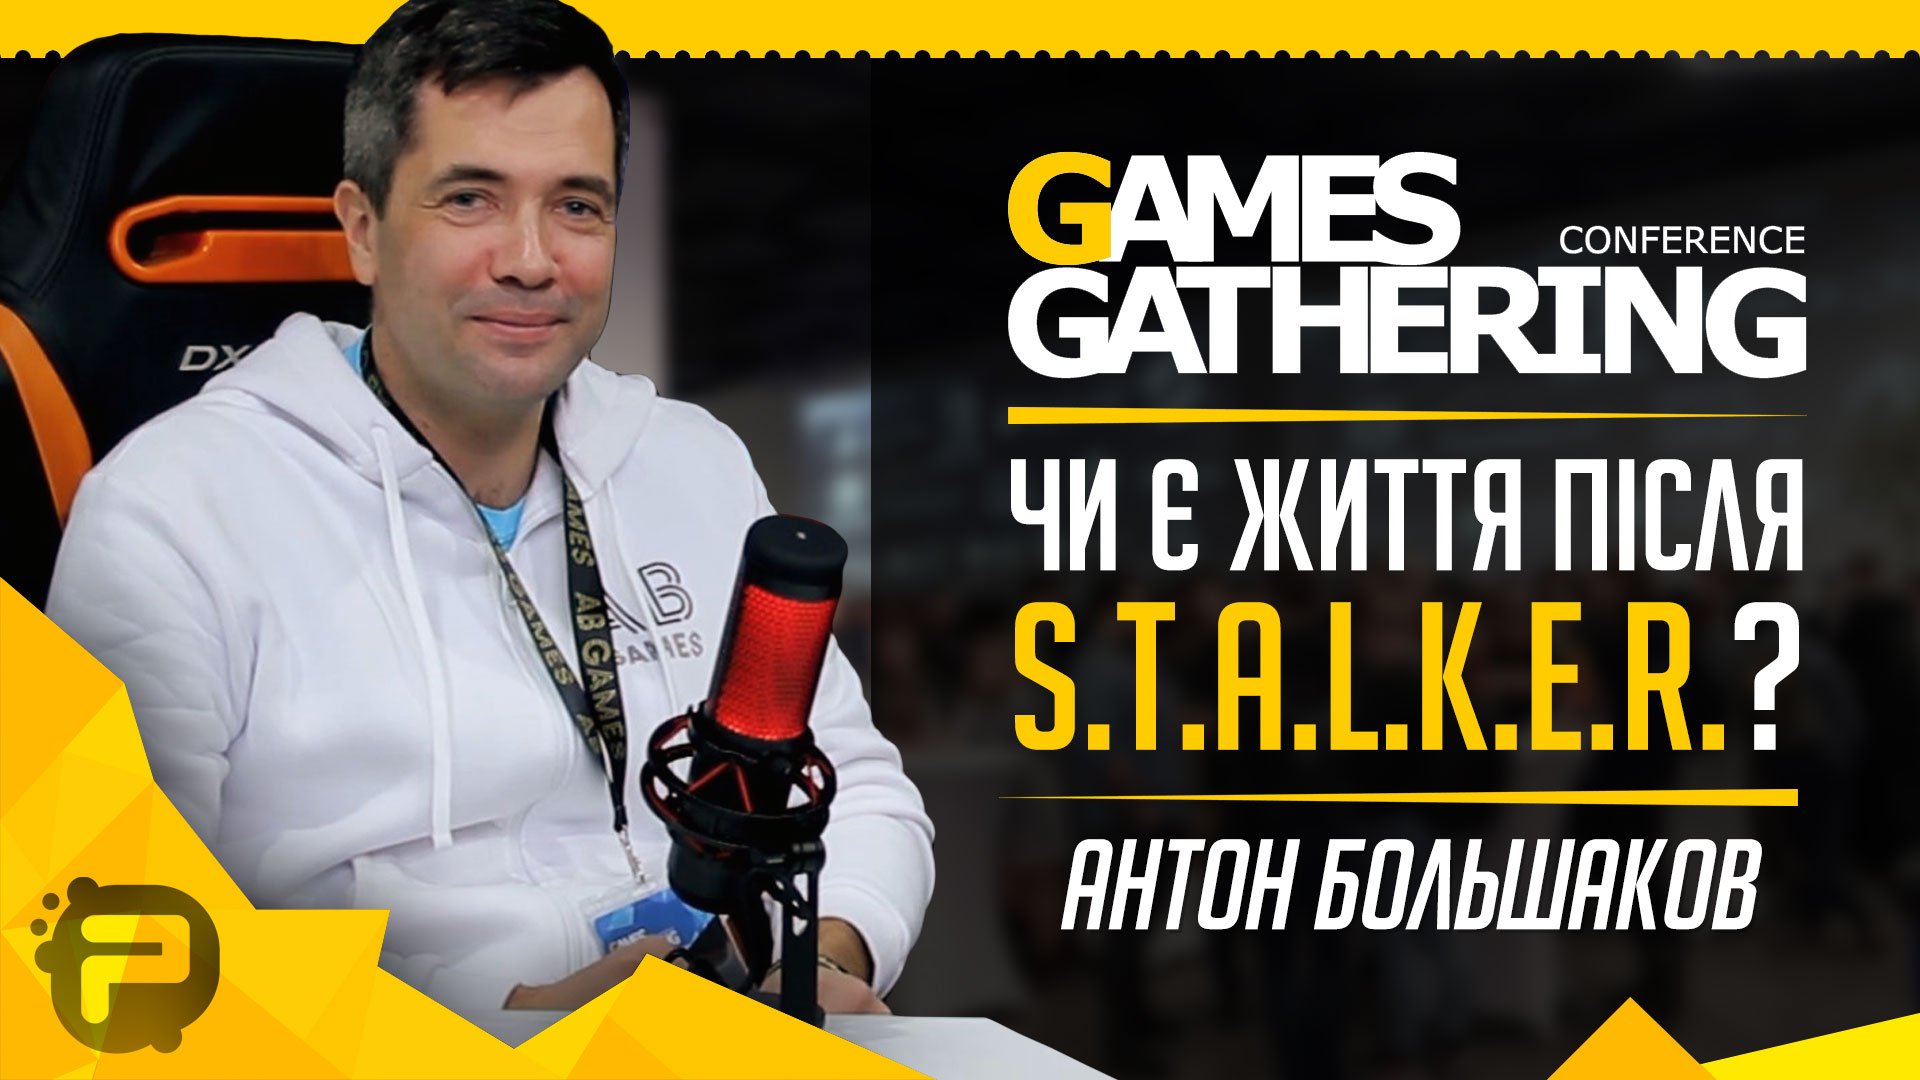 Антон Большаков / AB Games